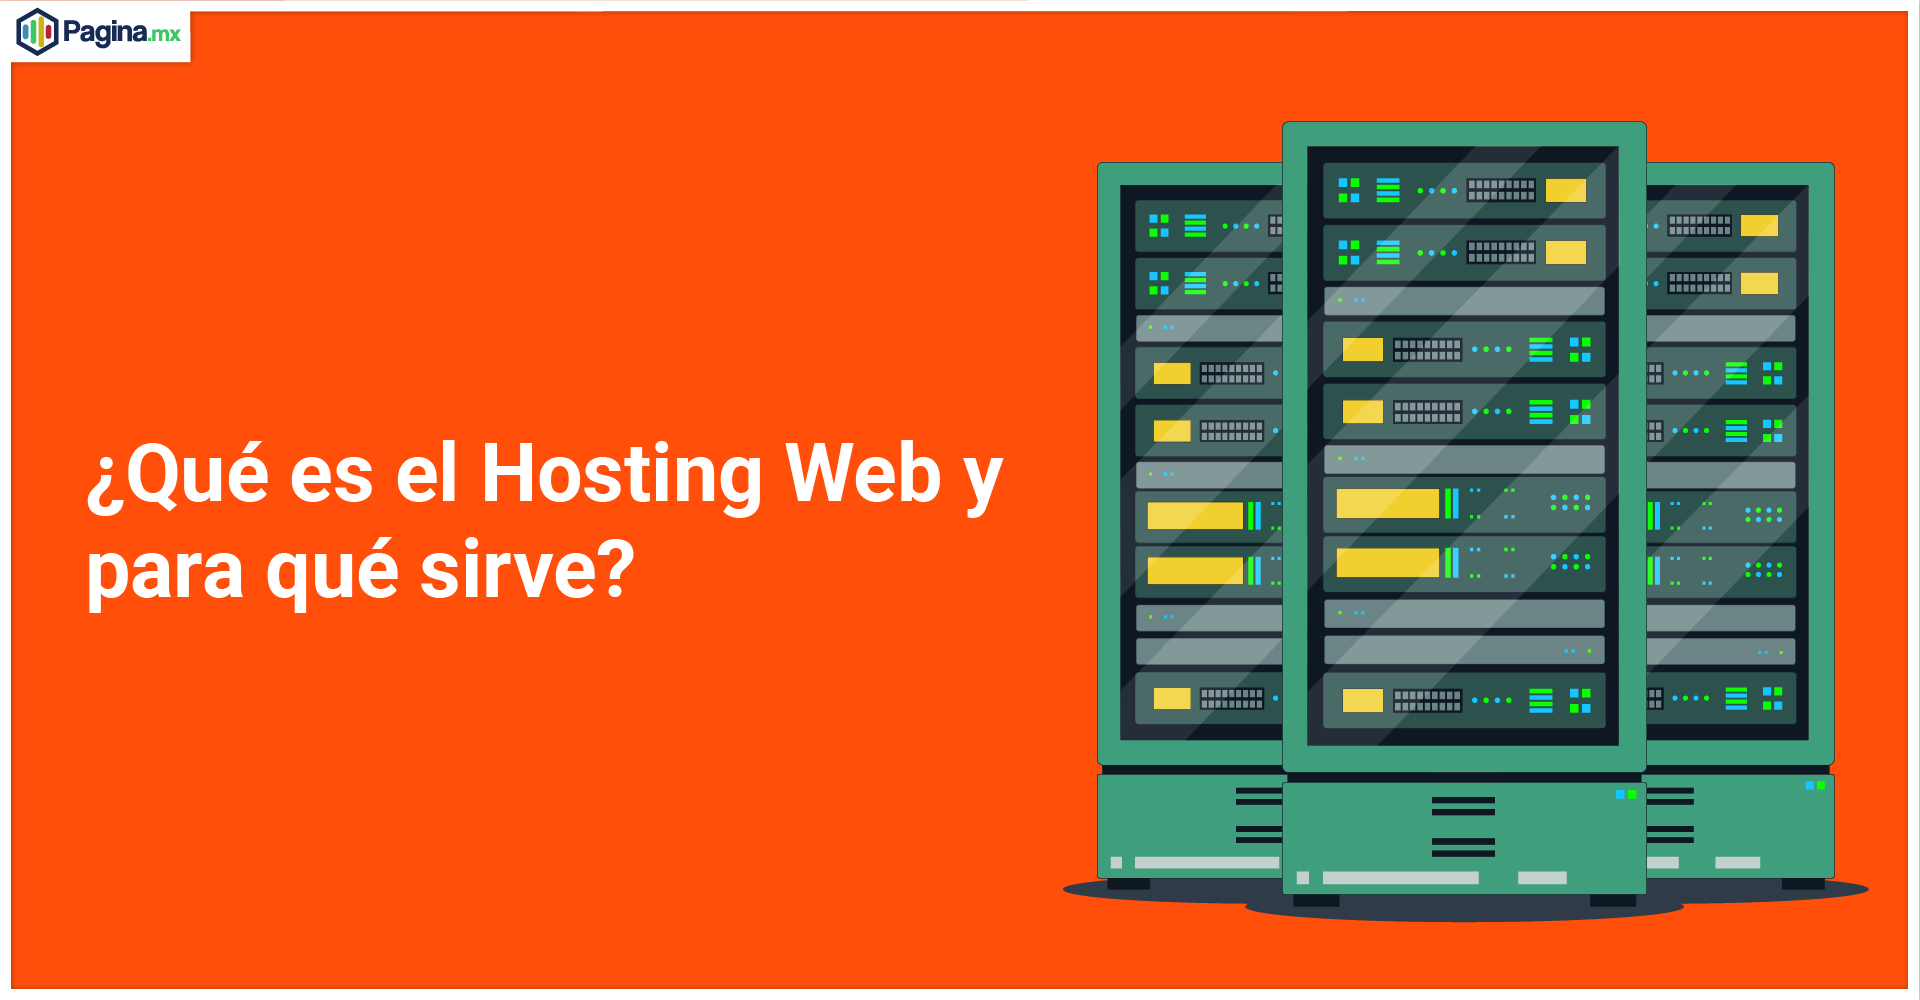 ¿Qué es el Hosting Web y para qué sirve?